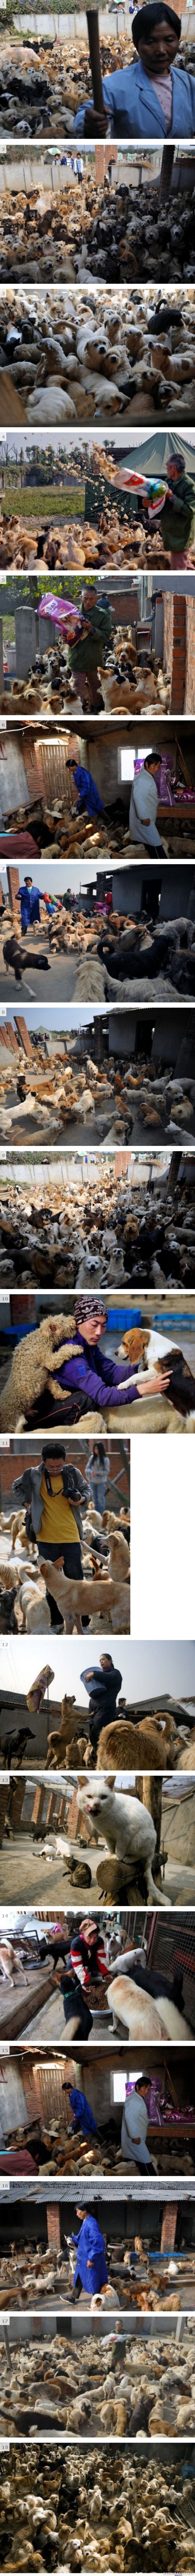 Kiinalainen naien adoptoinut 1500 koiraa ja 200 kissaa - :(